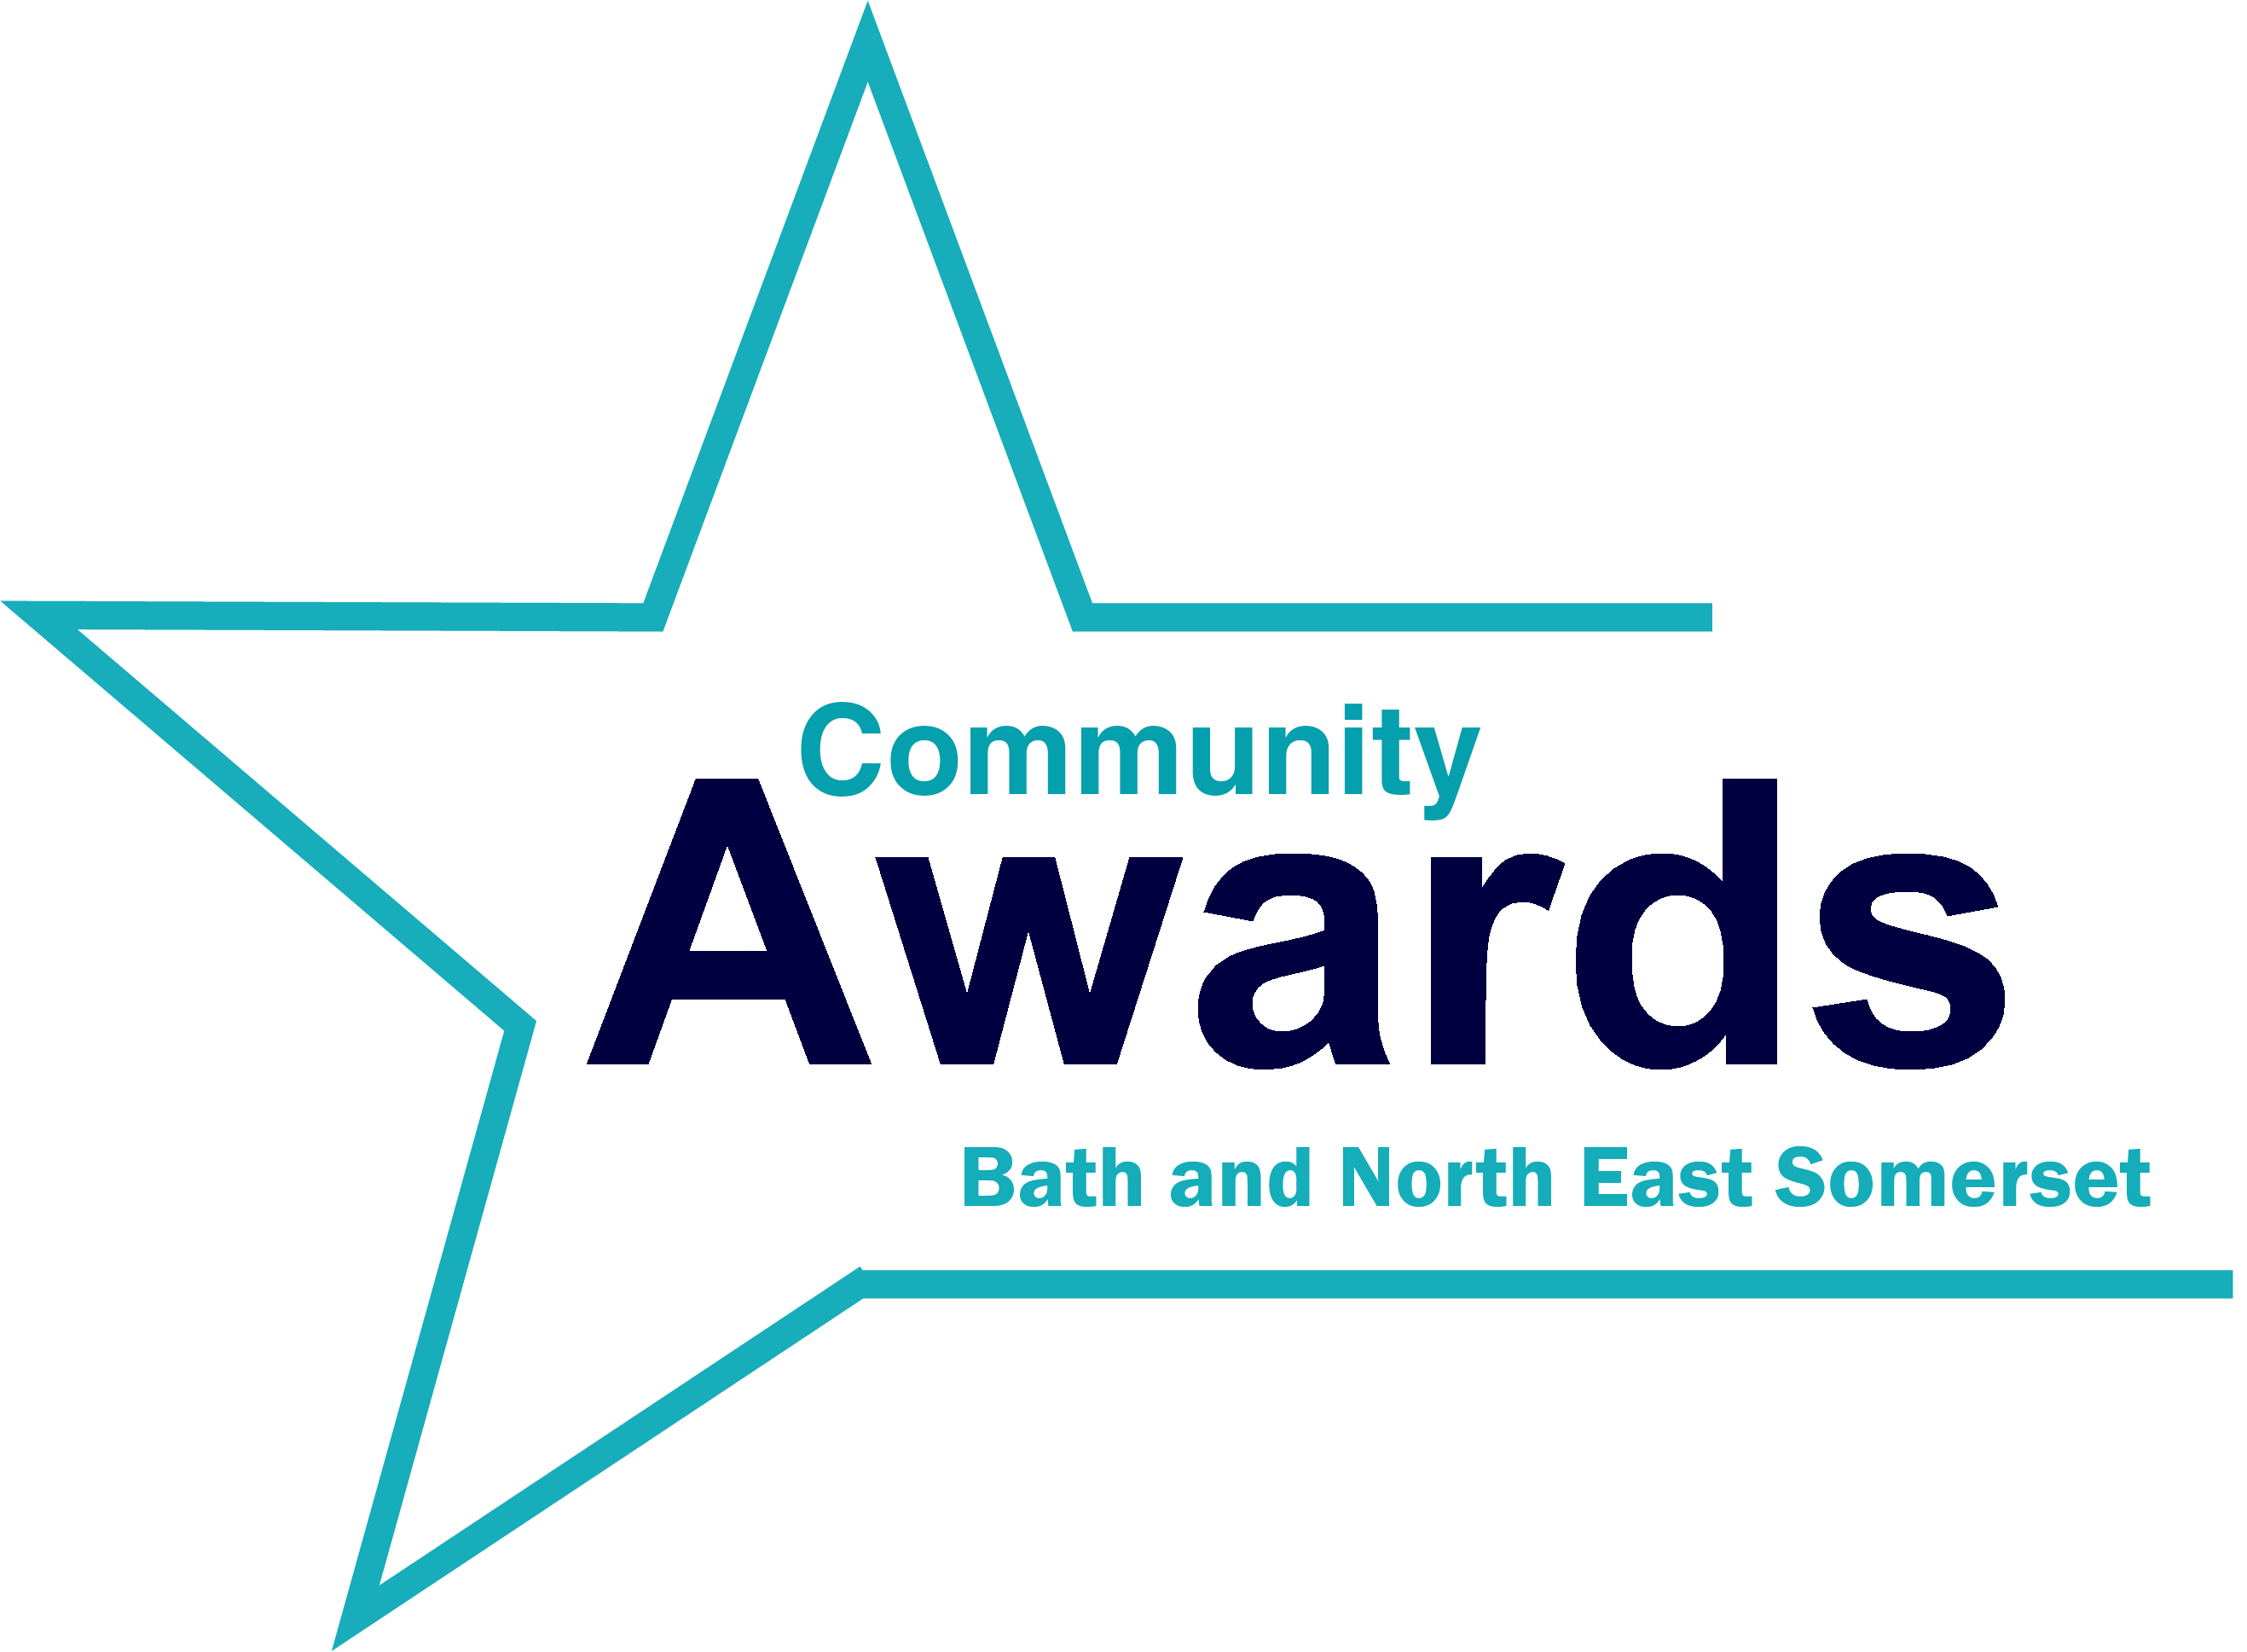 Community awards logo 